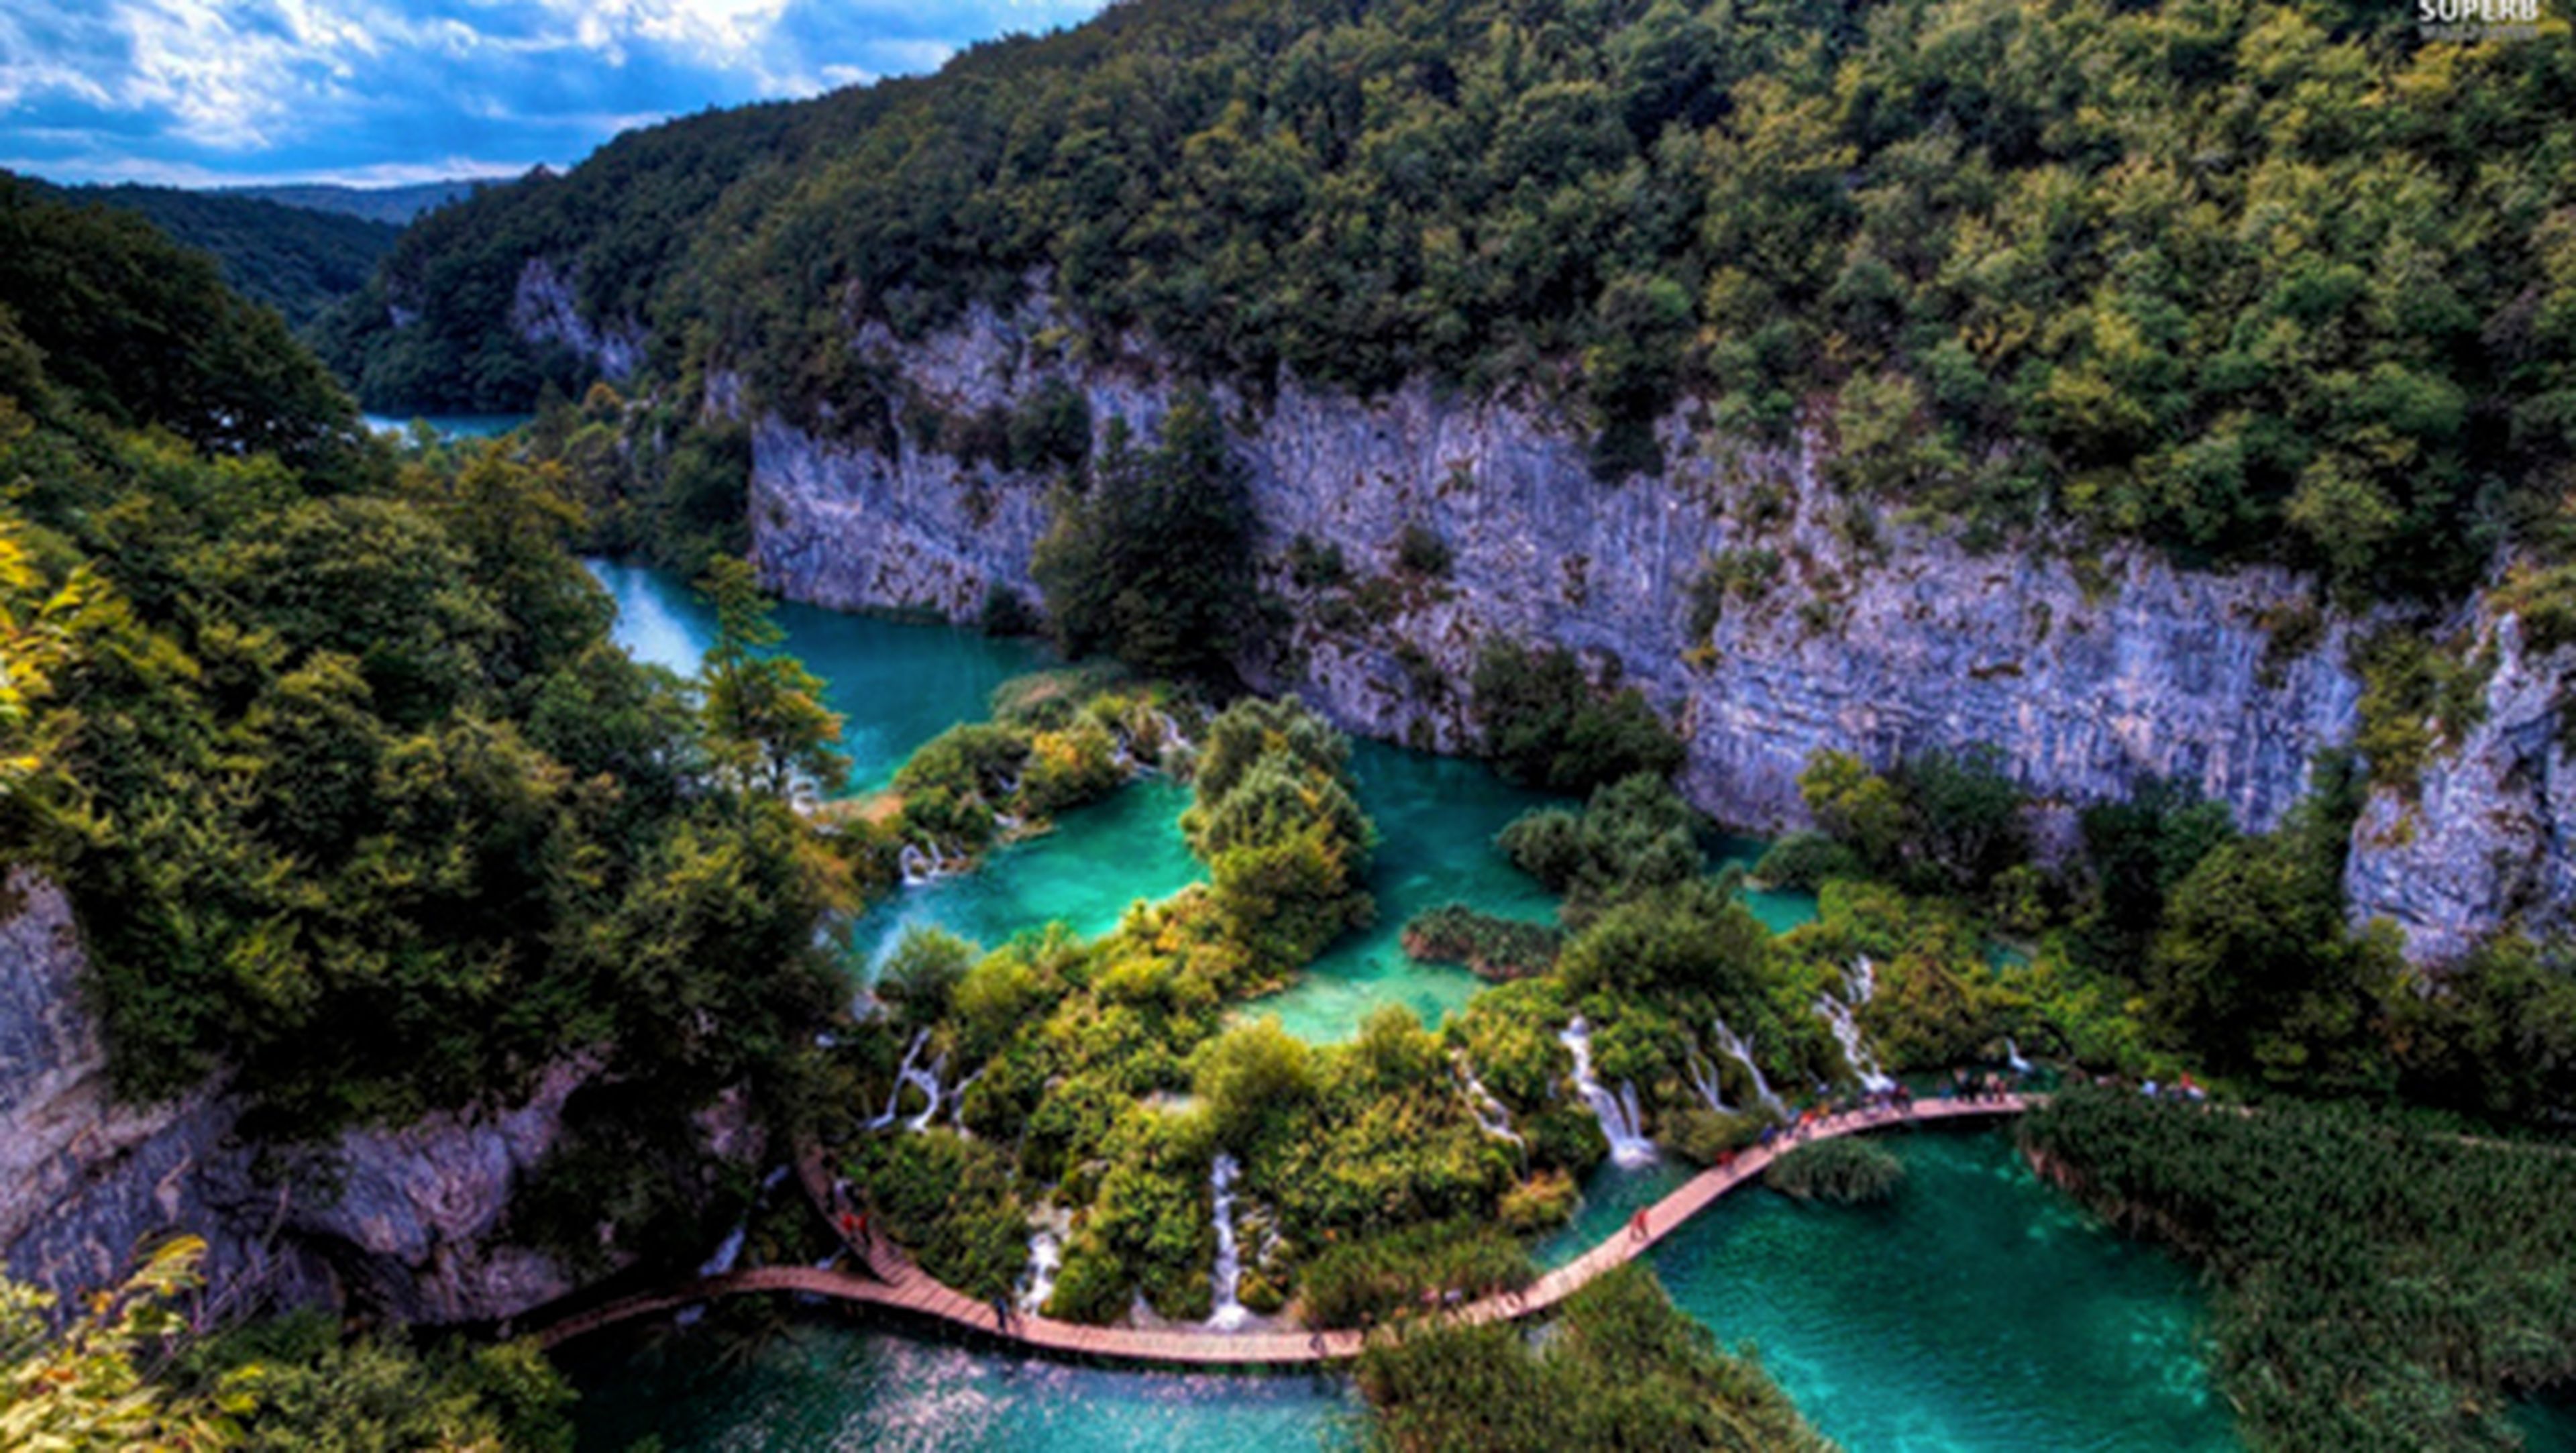 Los lagos de Plitvice, danza de tierra y agua